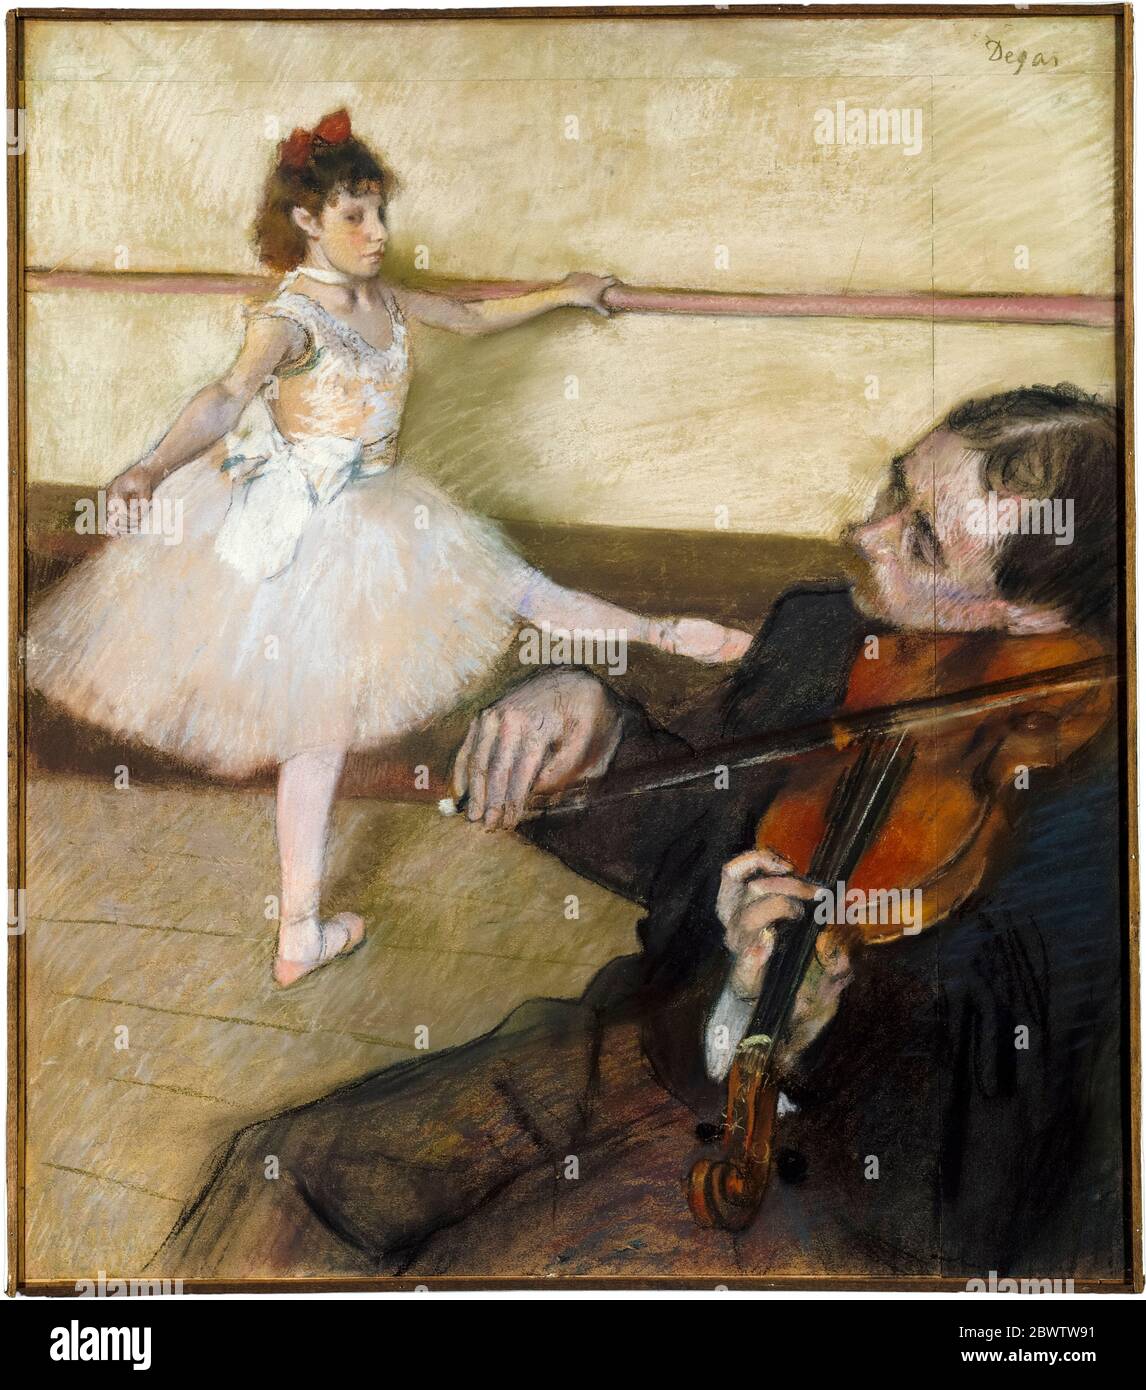 Edgar Degas, la leçon de danse (violon), dessin pastel, vers 1879 Banque D'Images